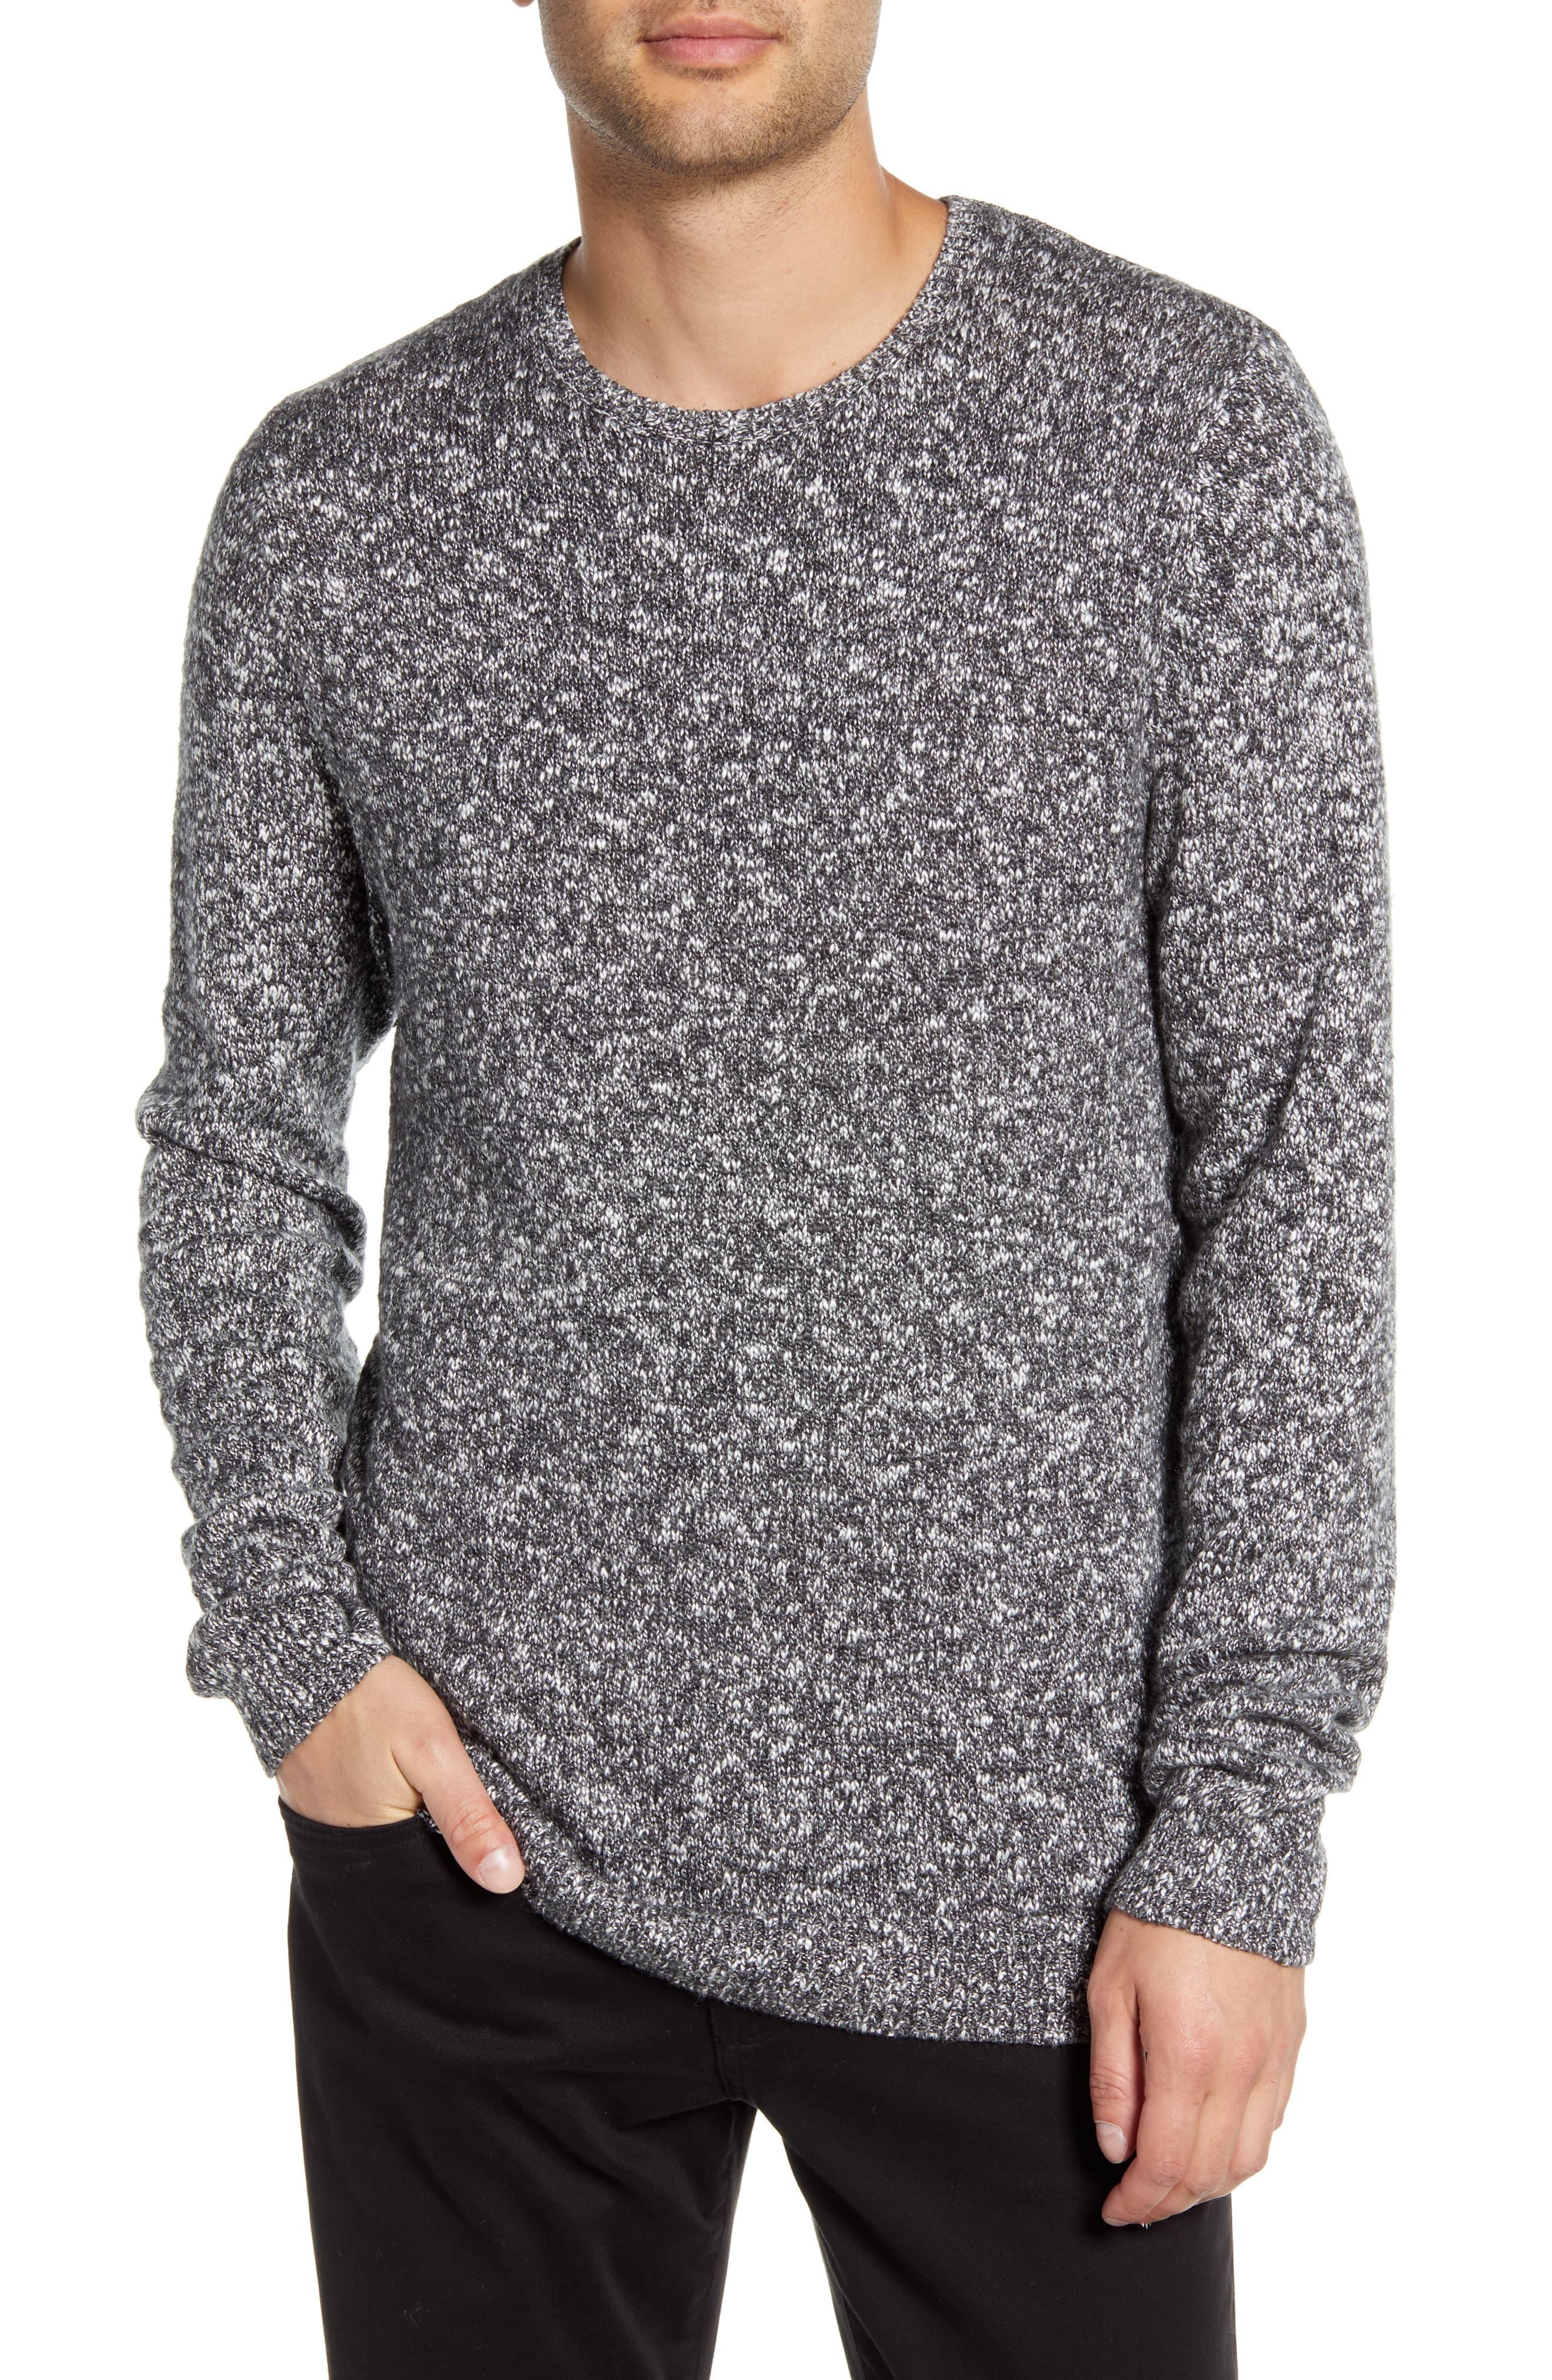 Calibrate Cotton Slub Crewneck Sweater in Gray for Men - Lyst